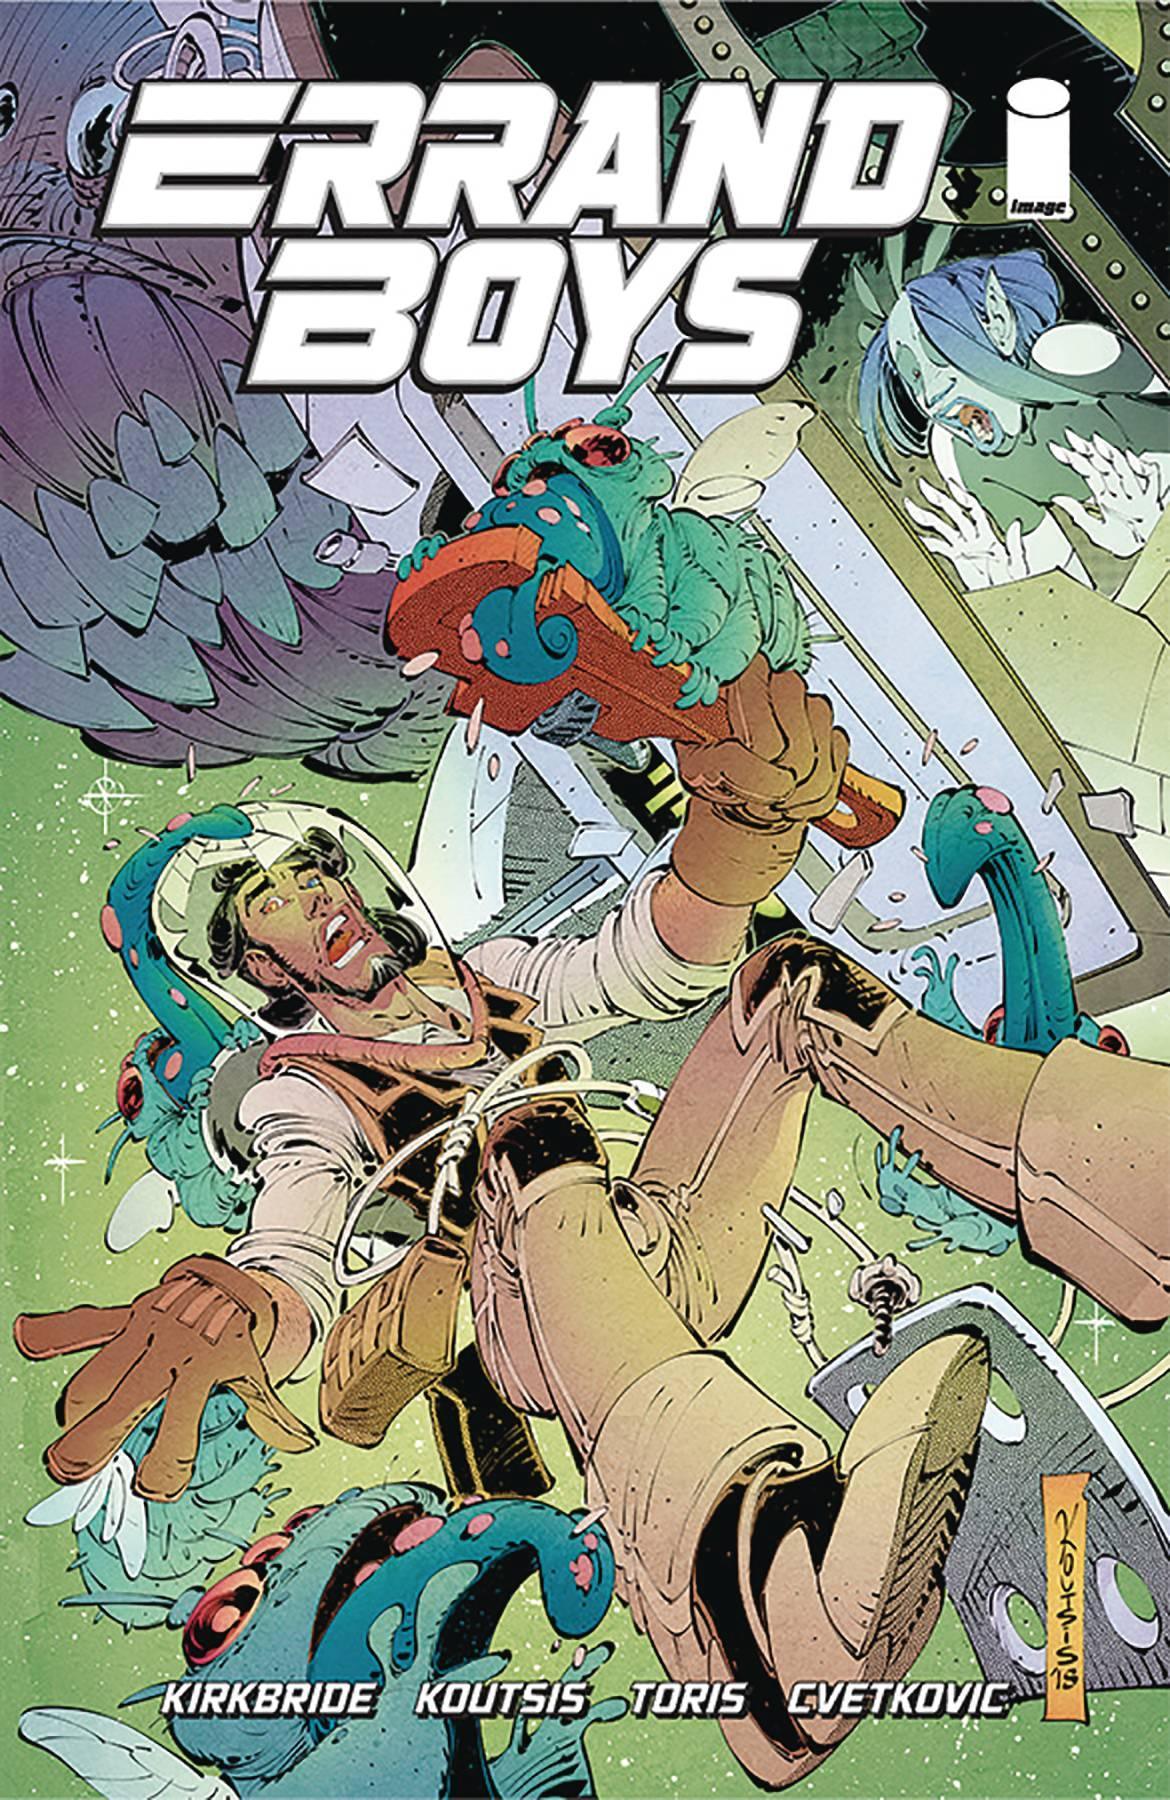 ERRAND BOYS #5 - Kings Comics